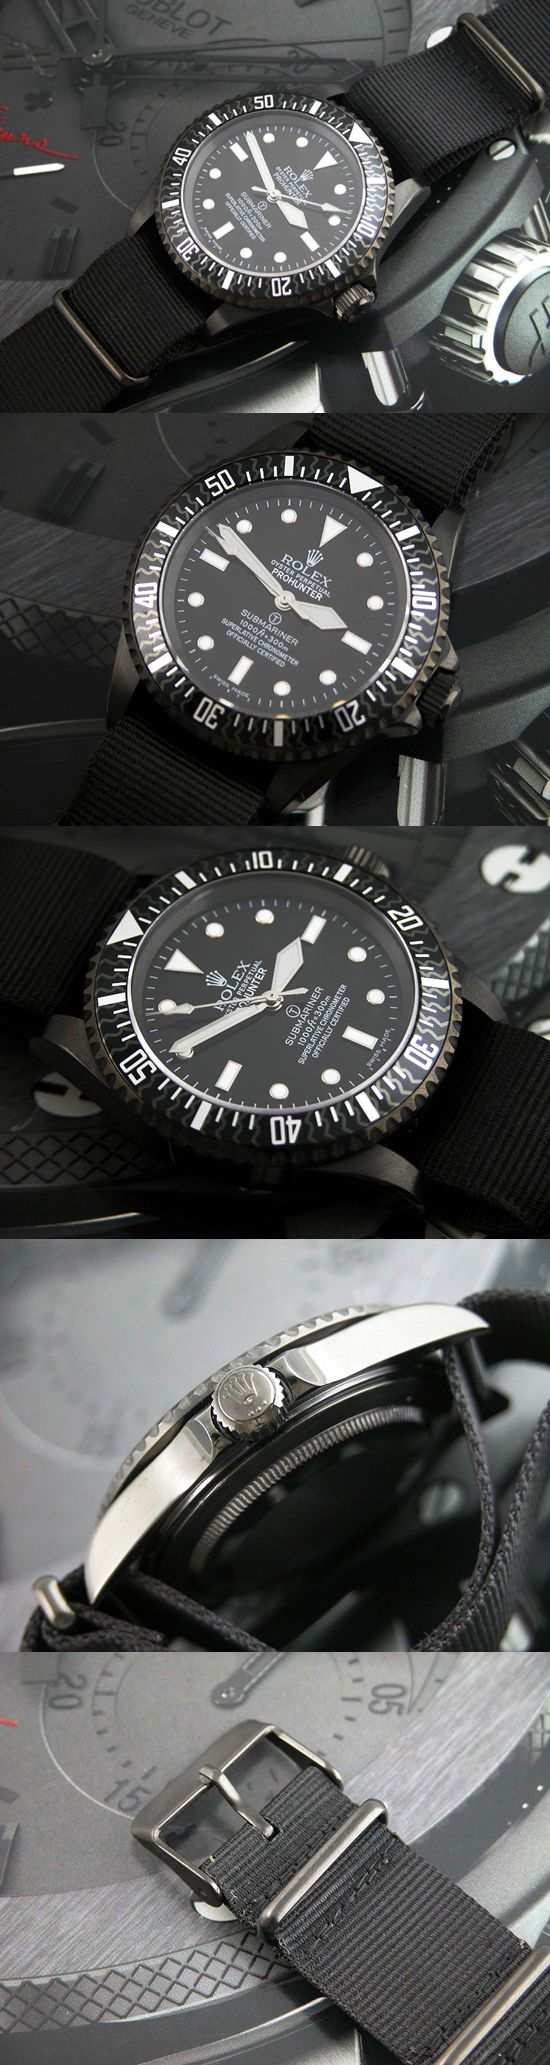 おしゃれなブランド時計がロレックス-サブマリーナ-ROLEX-14060M-44-男性用を提供します.